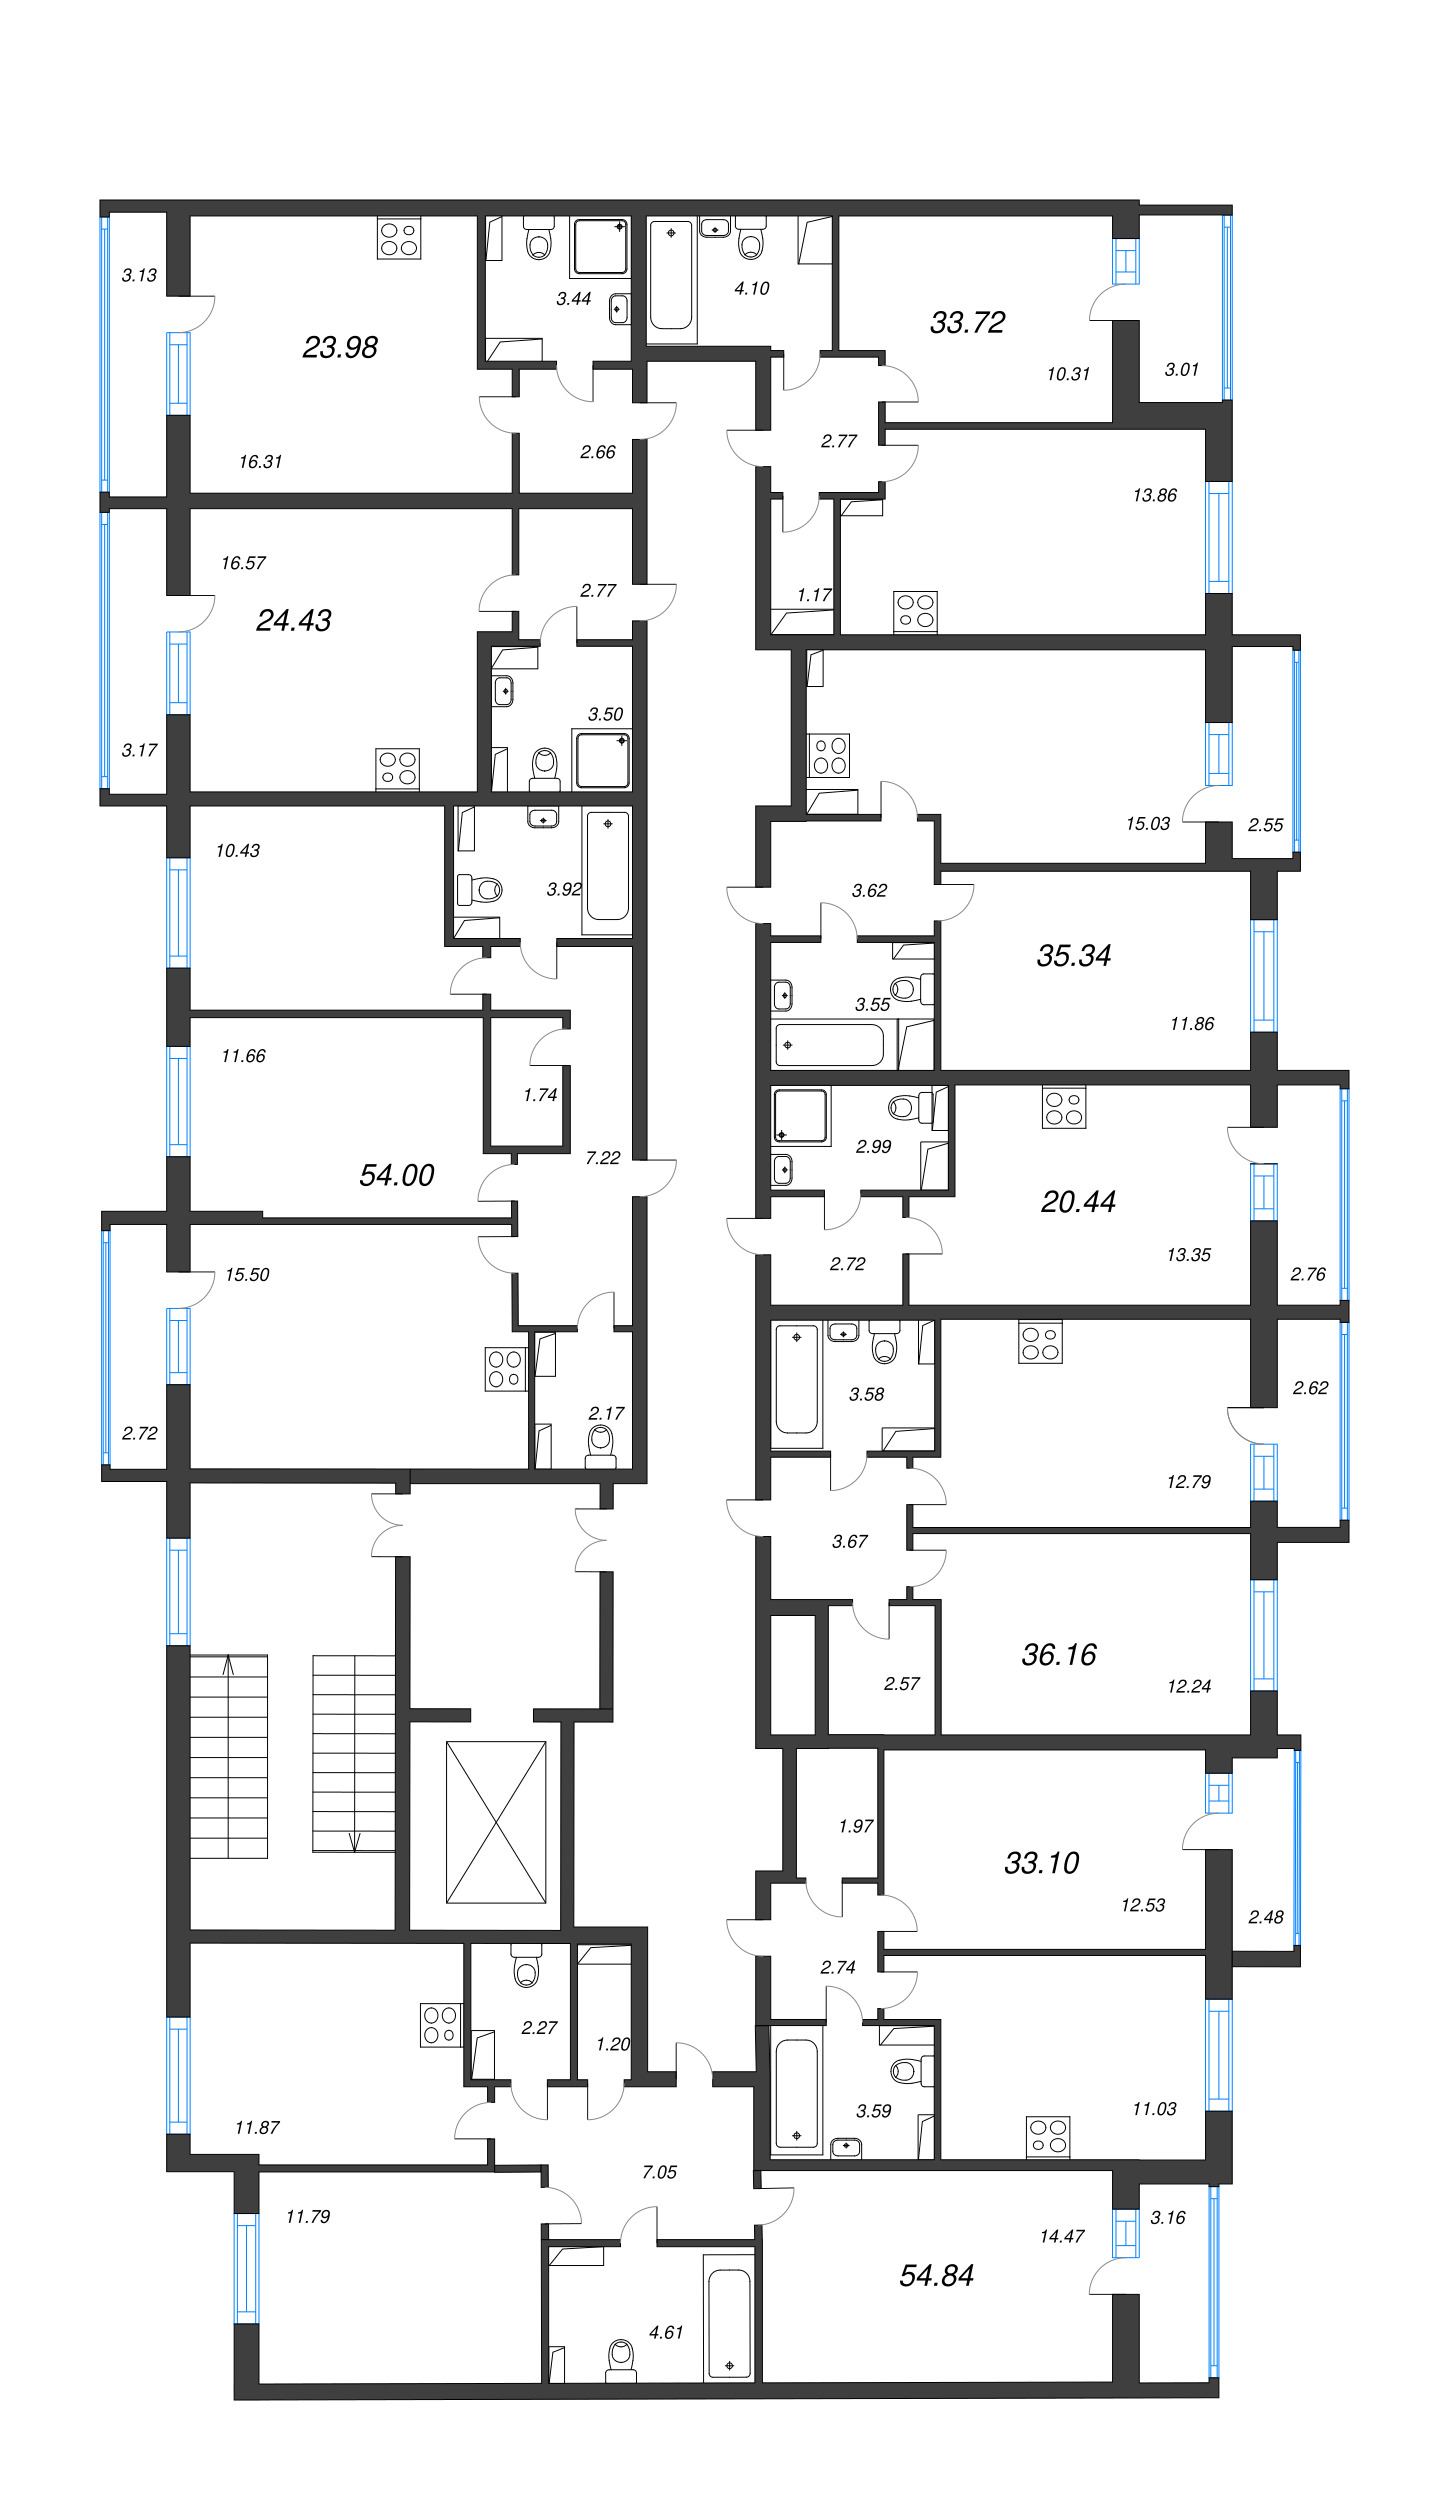 Квартира-студия, 20.44 м² в ЖК "Кинопарк" - планировка этажа